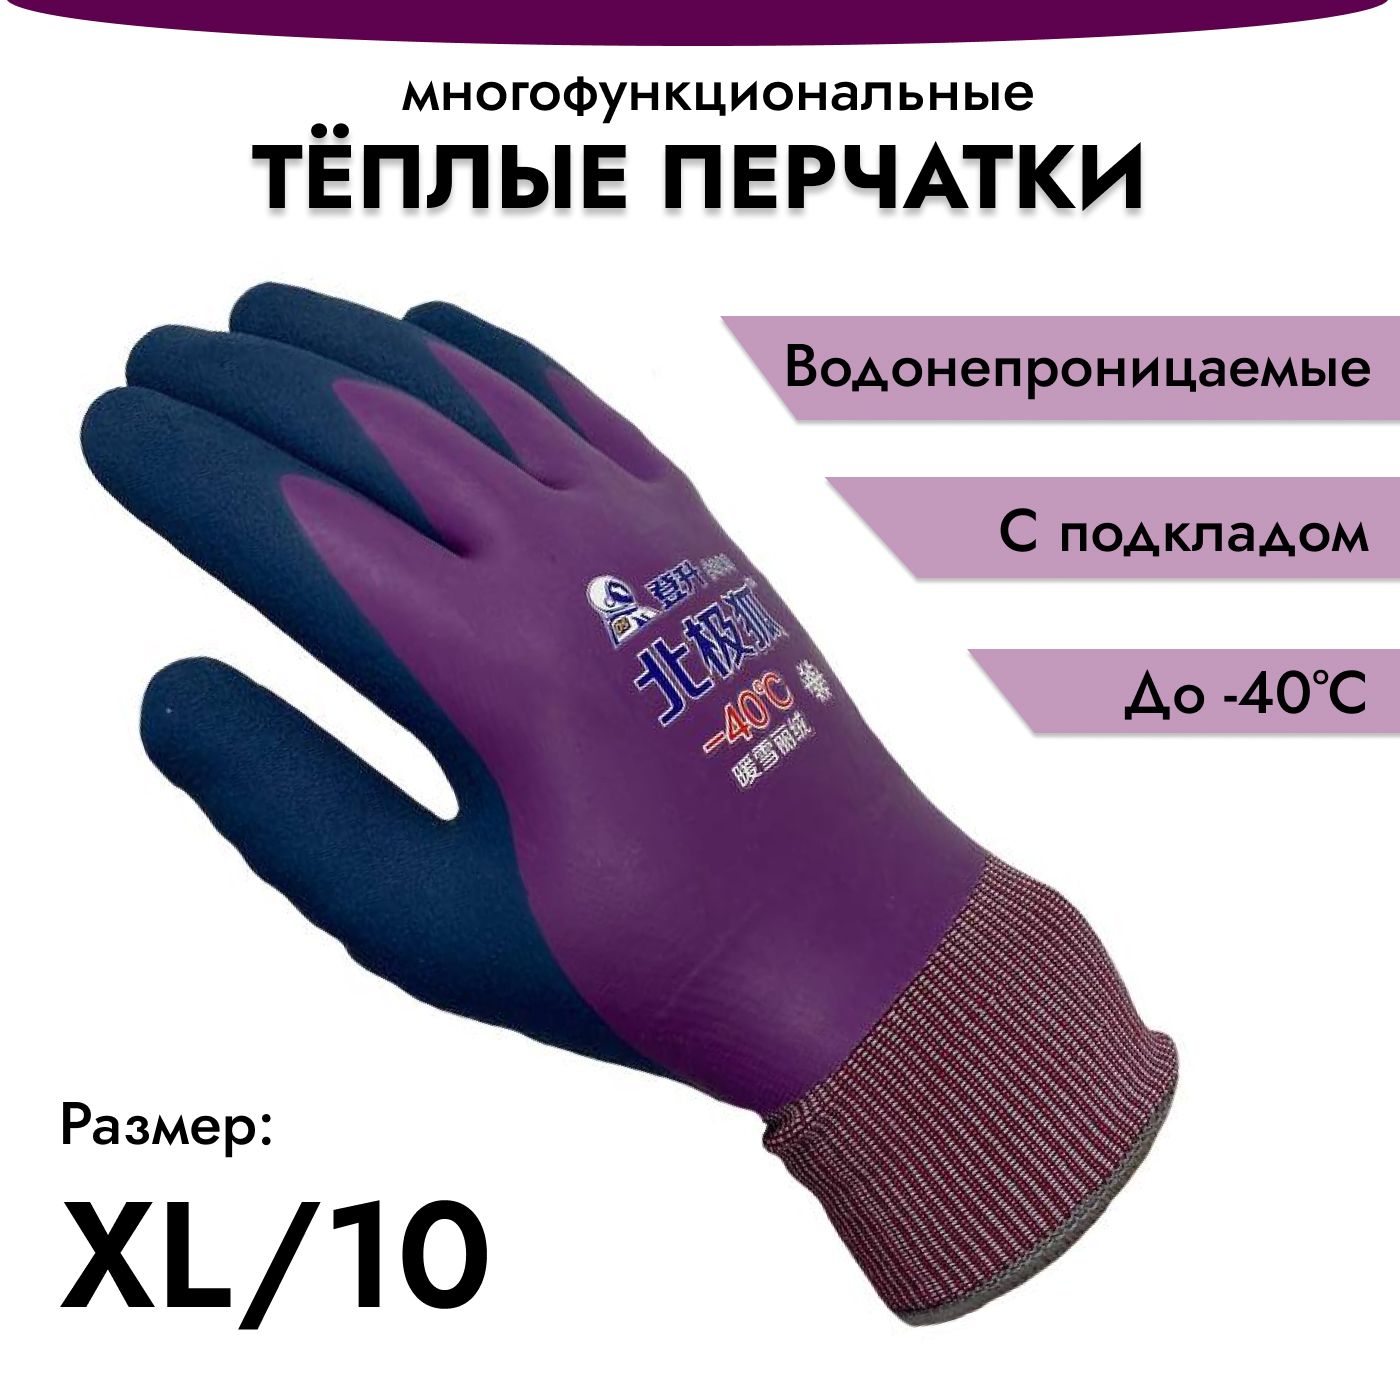 Зимние перчатки для рыбалки водонепроницаемые и теплые - полезная информация